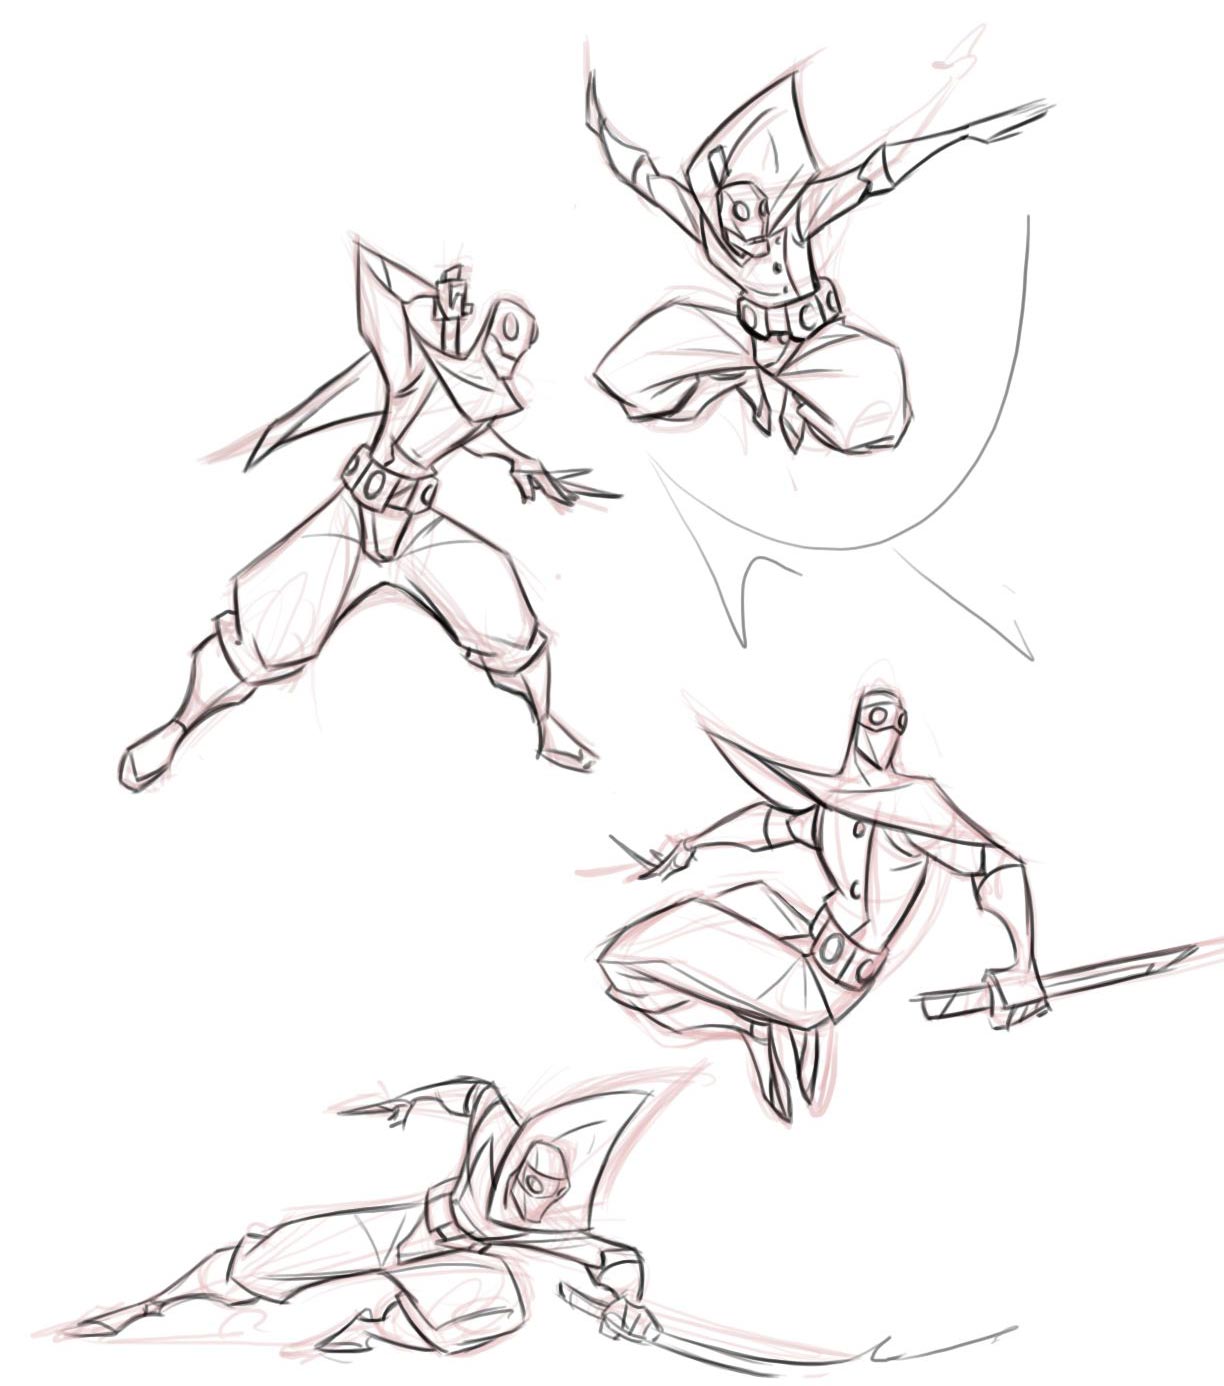 Ninja drawing reference